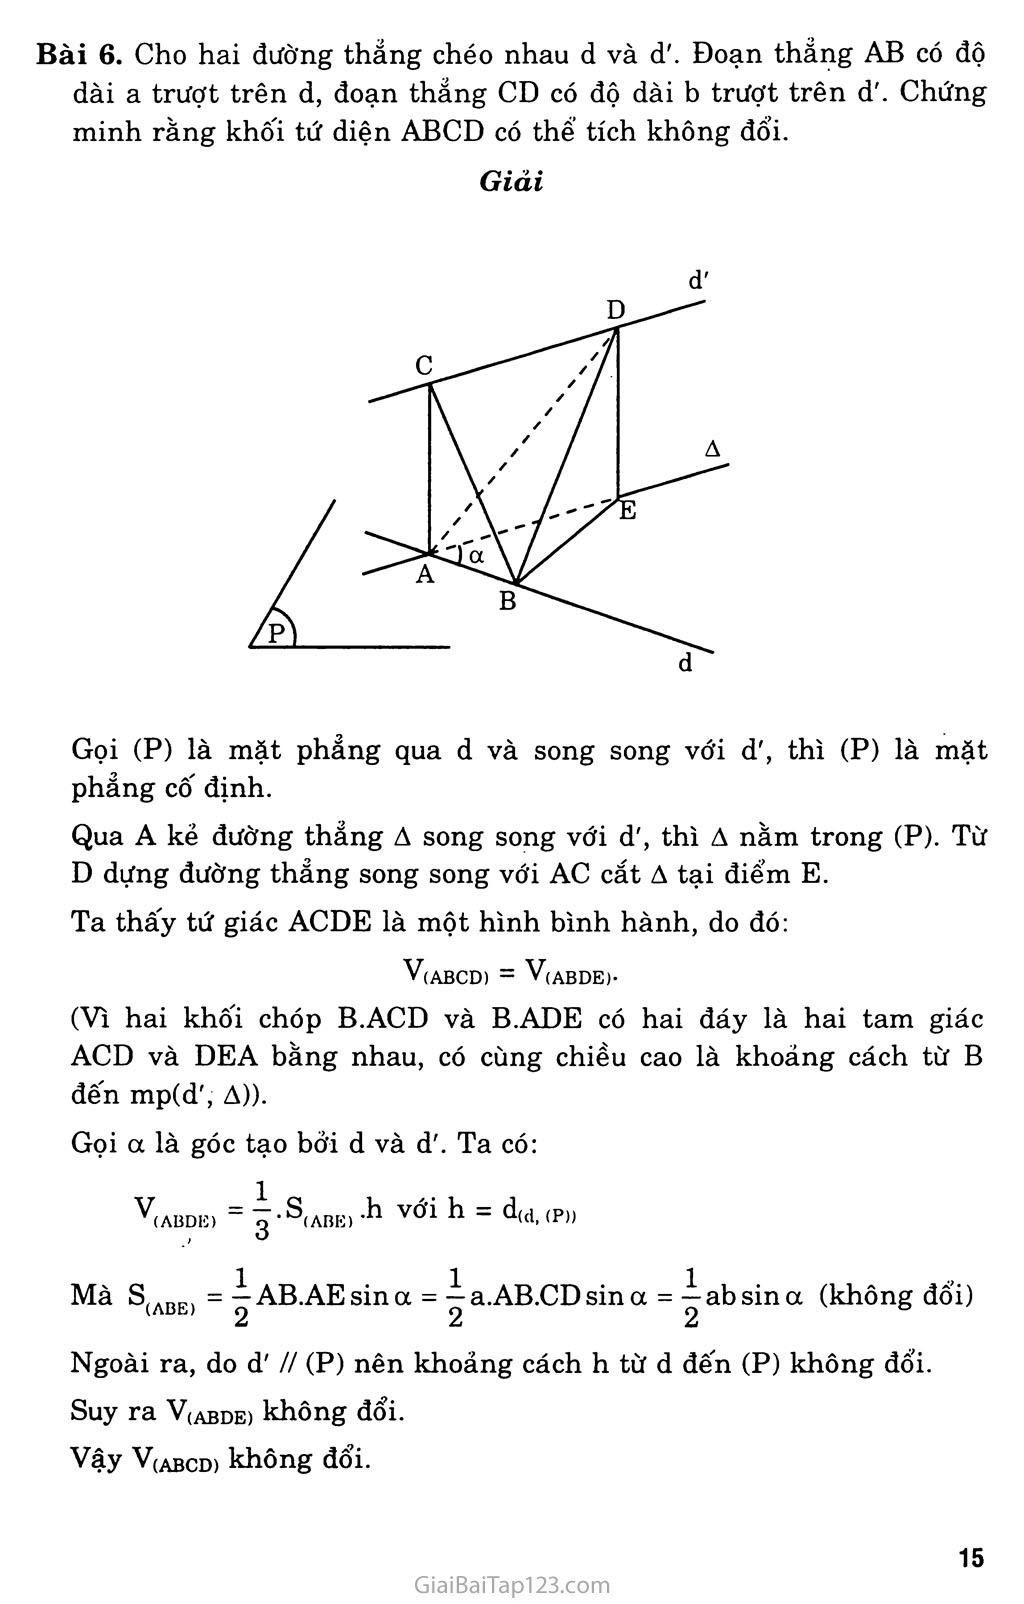 Bài 3. Khái niệm về thể tích của khối đa diện trang 6